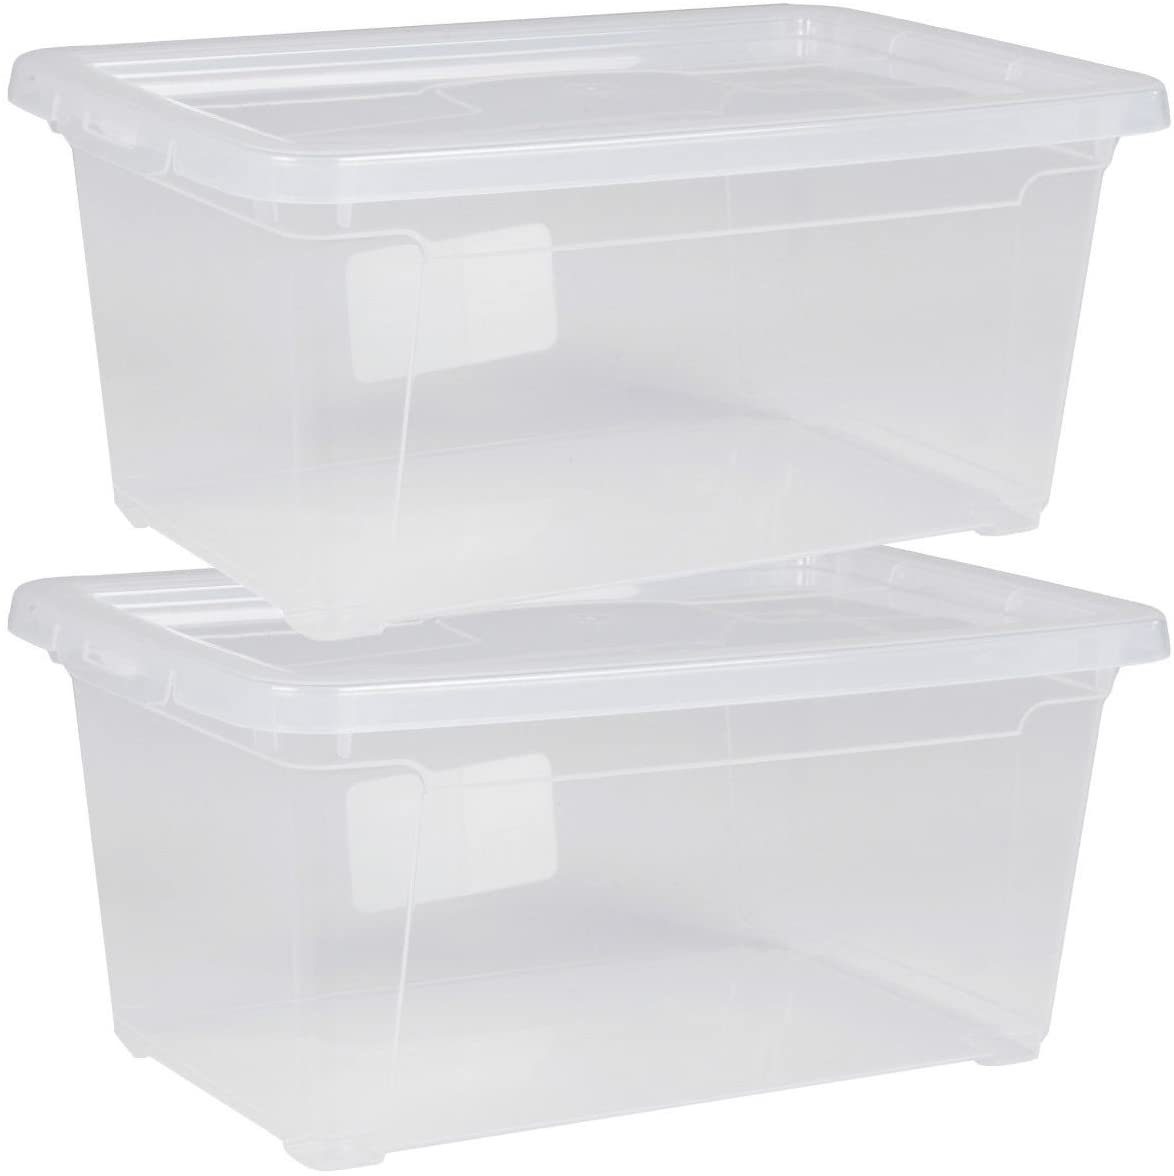 Stapelboxen Regalbox Lagerbox Auswahl Aufbewahrungsbox mit Deckel 